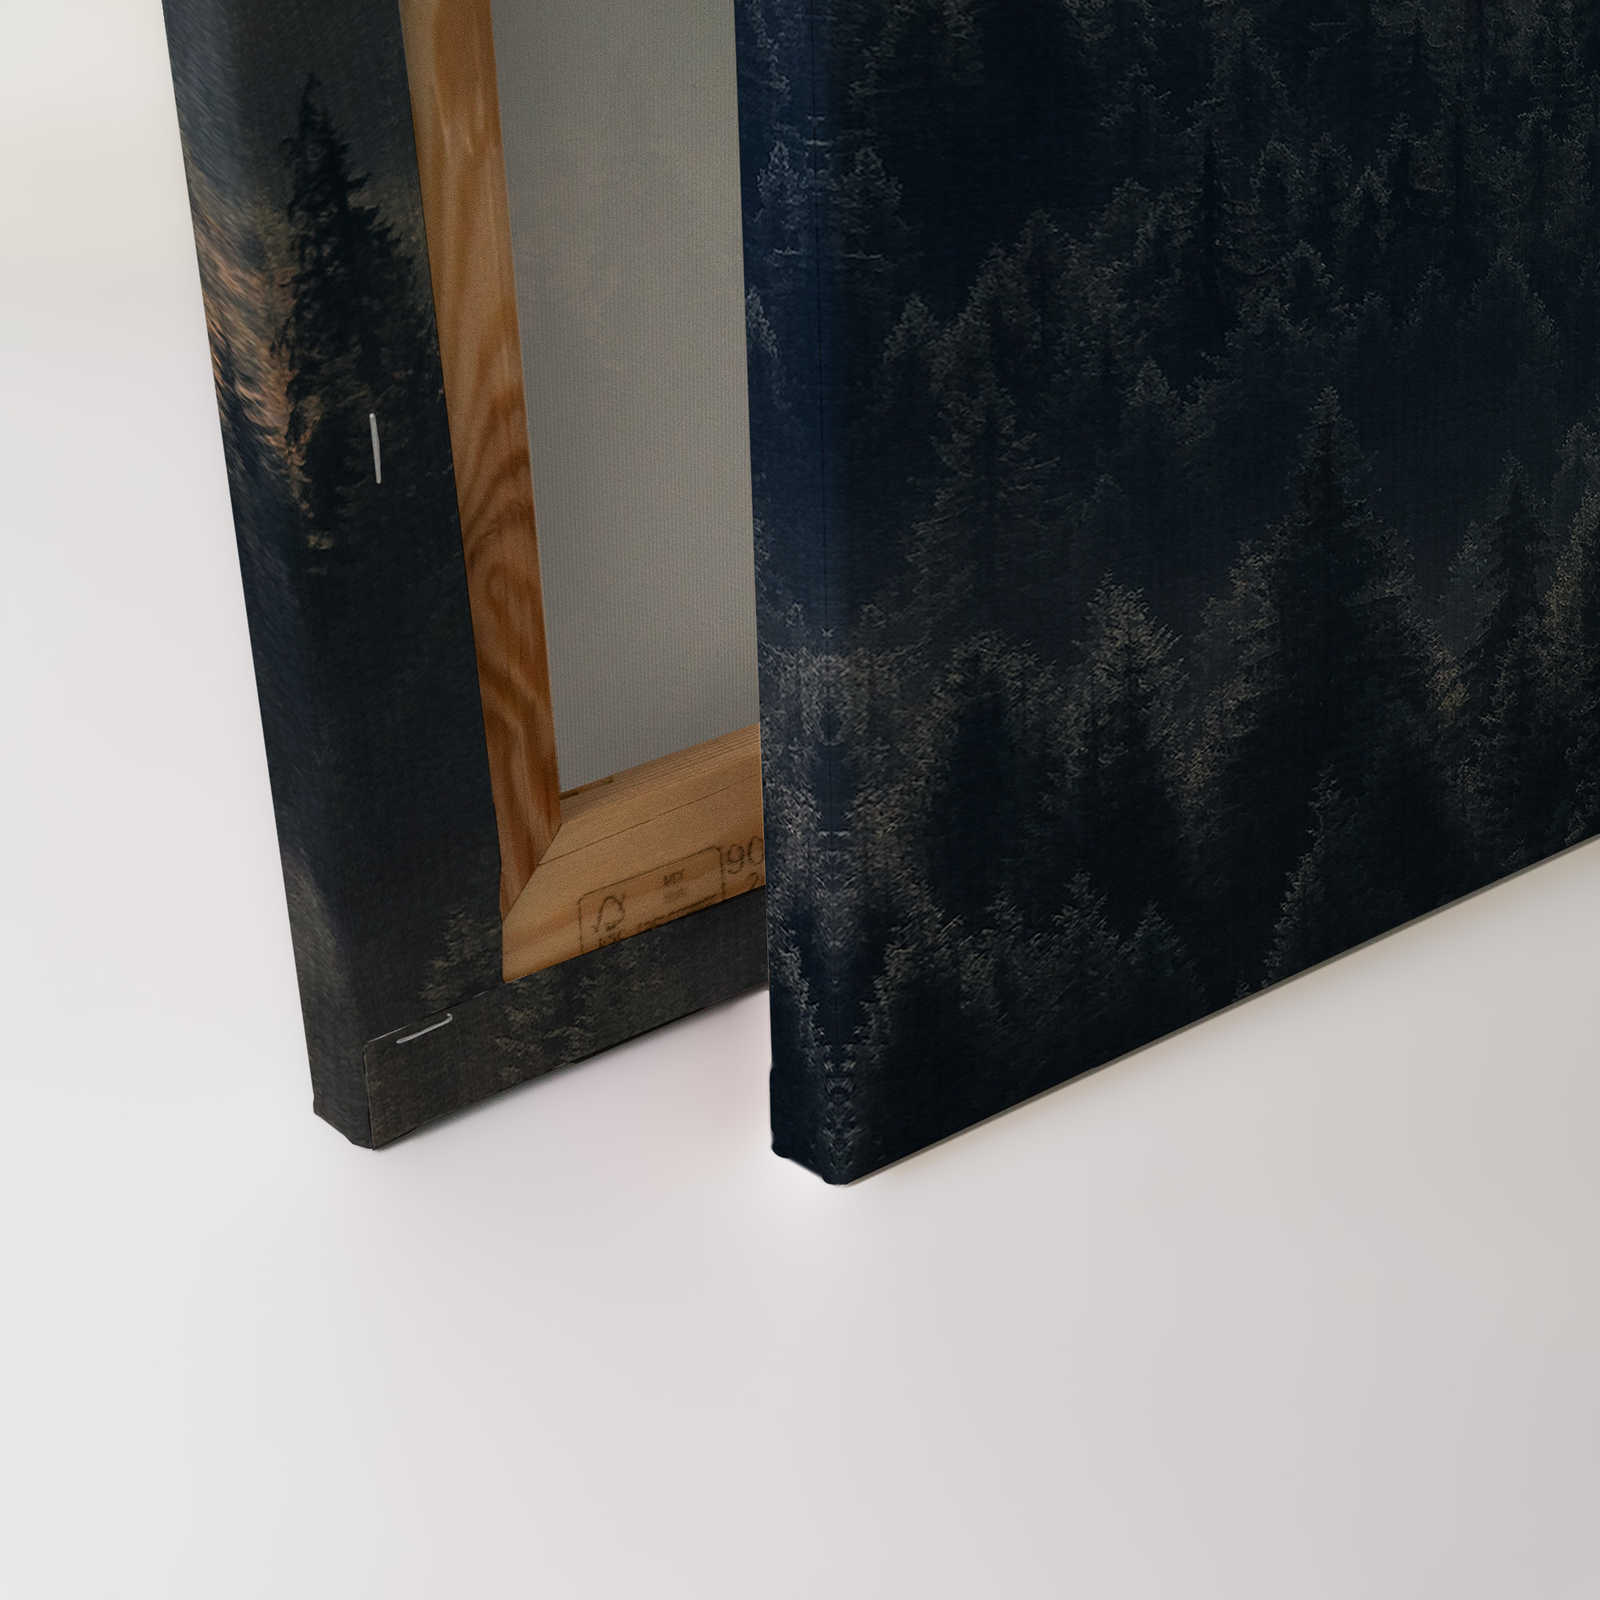             Cuadro en lienzo con paisaje forestal sobre óptica de estructura de lino - 0,90 m x 0,60 m
        